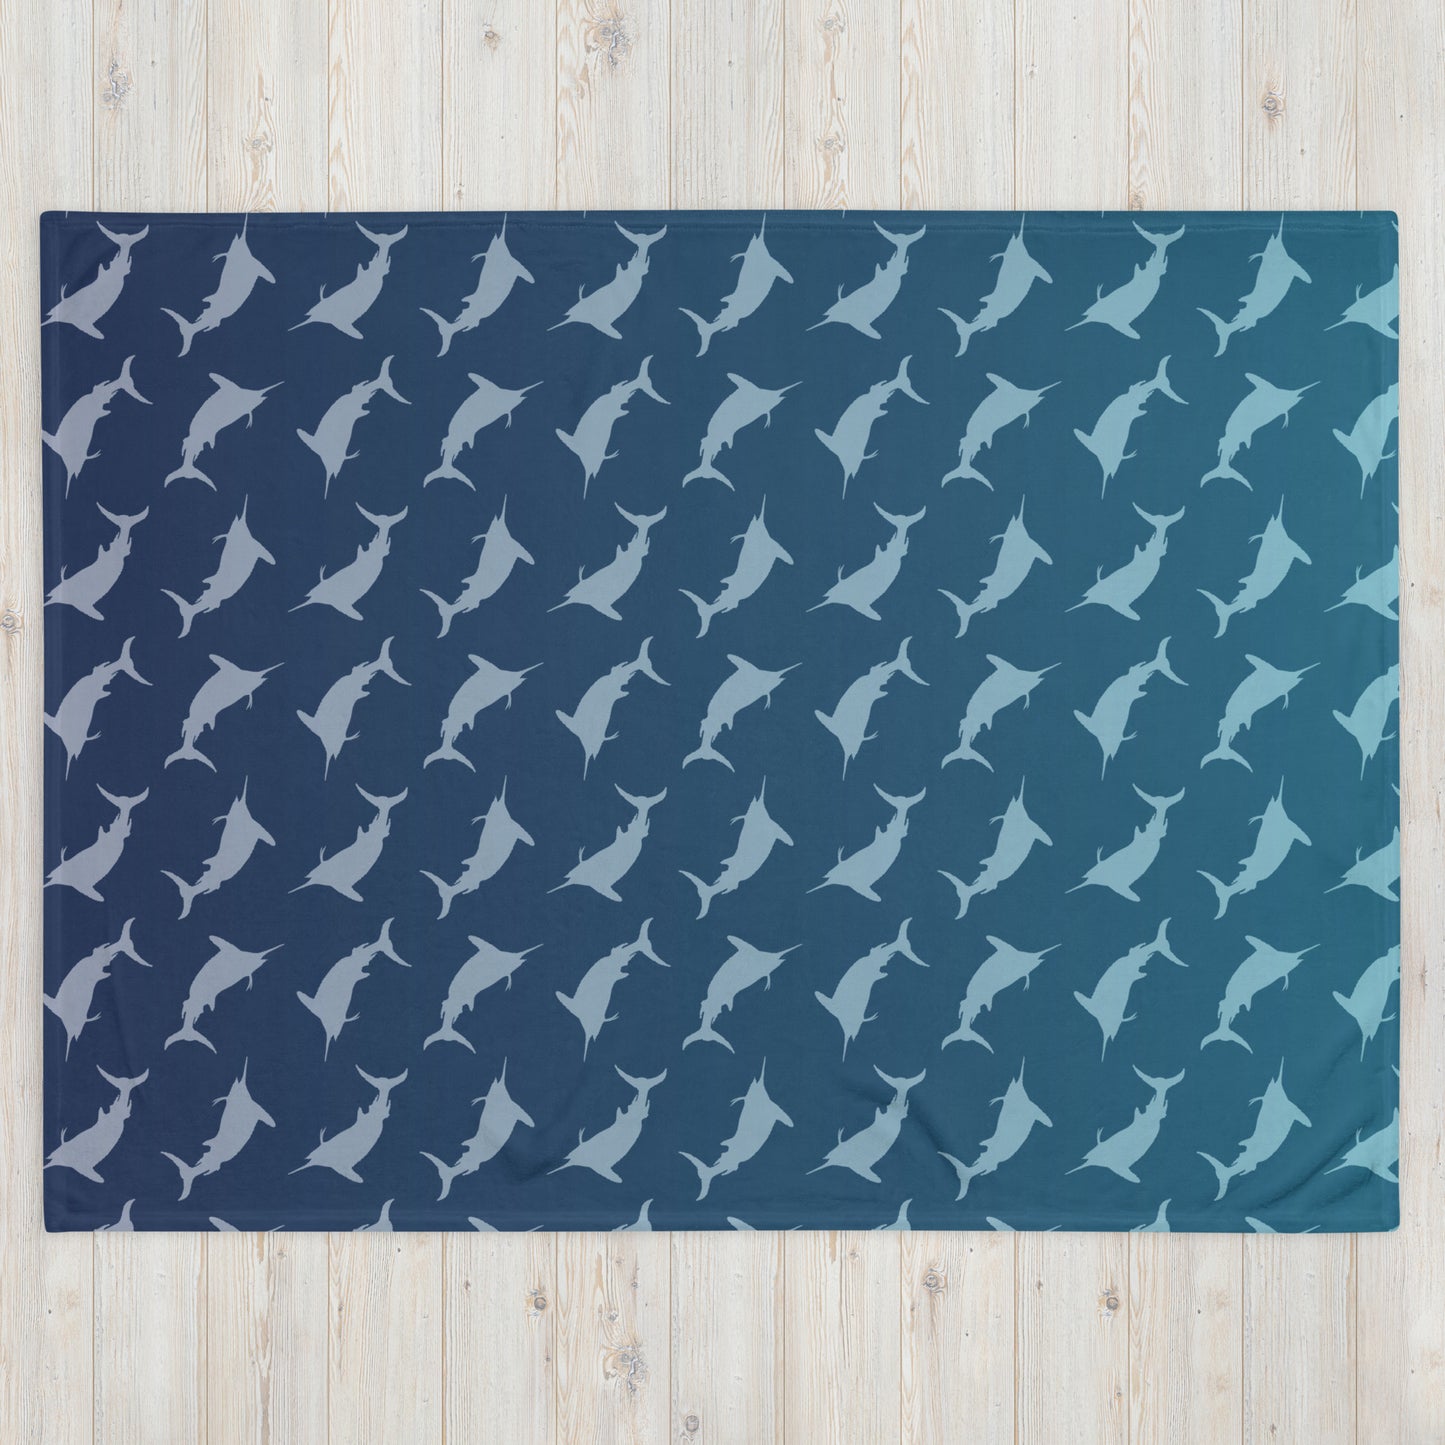 Random Marlin Throw Blanket 60x80